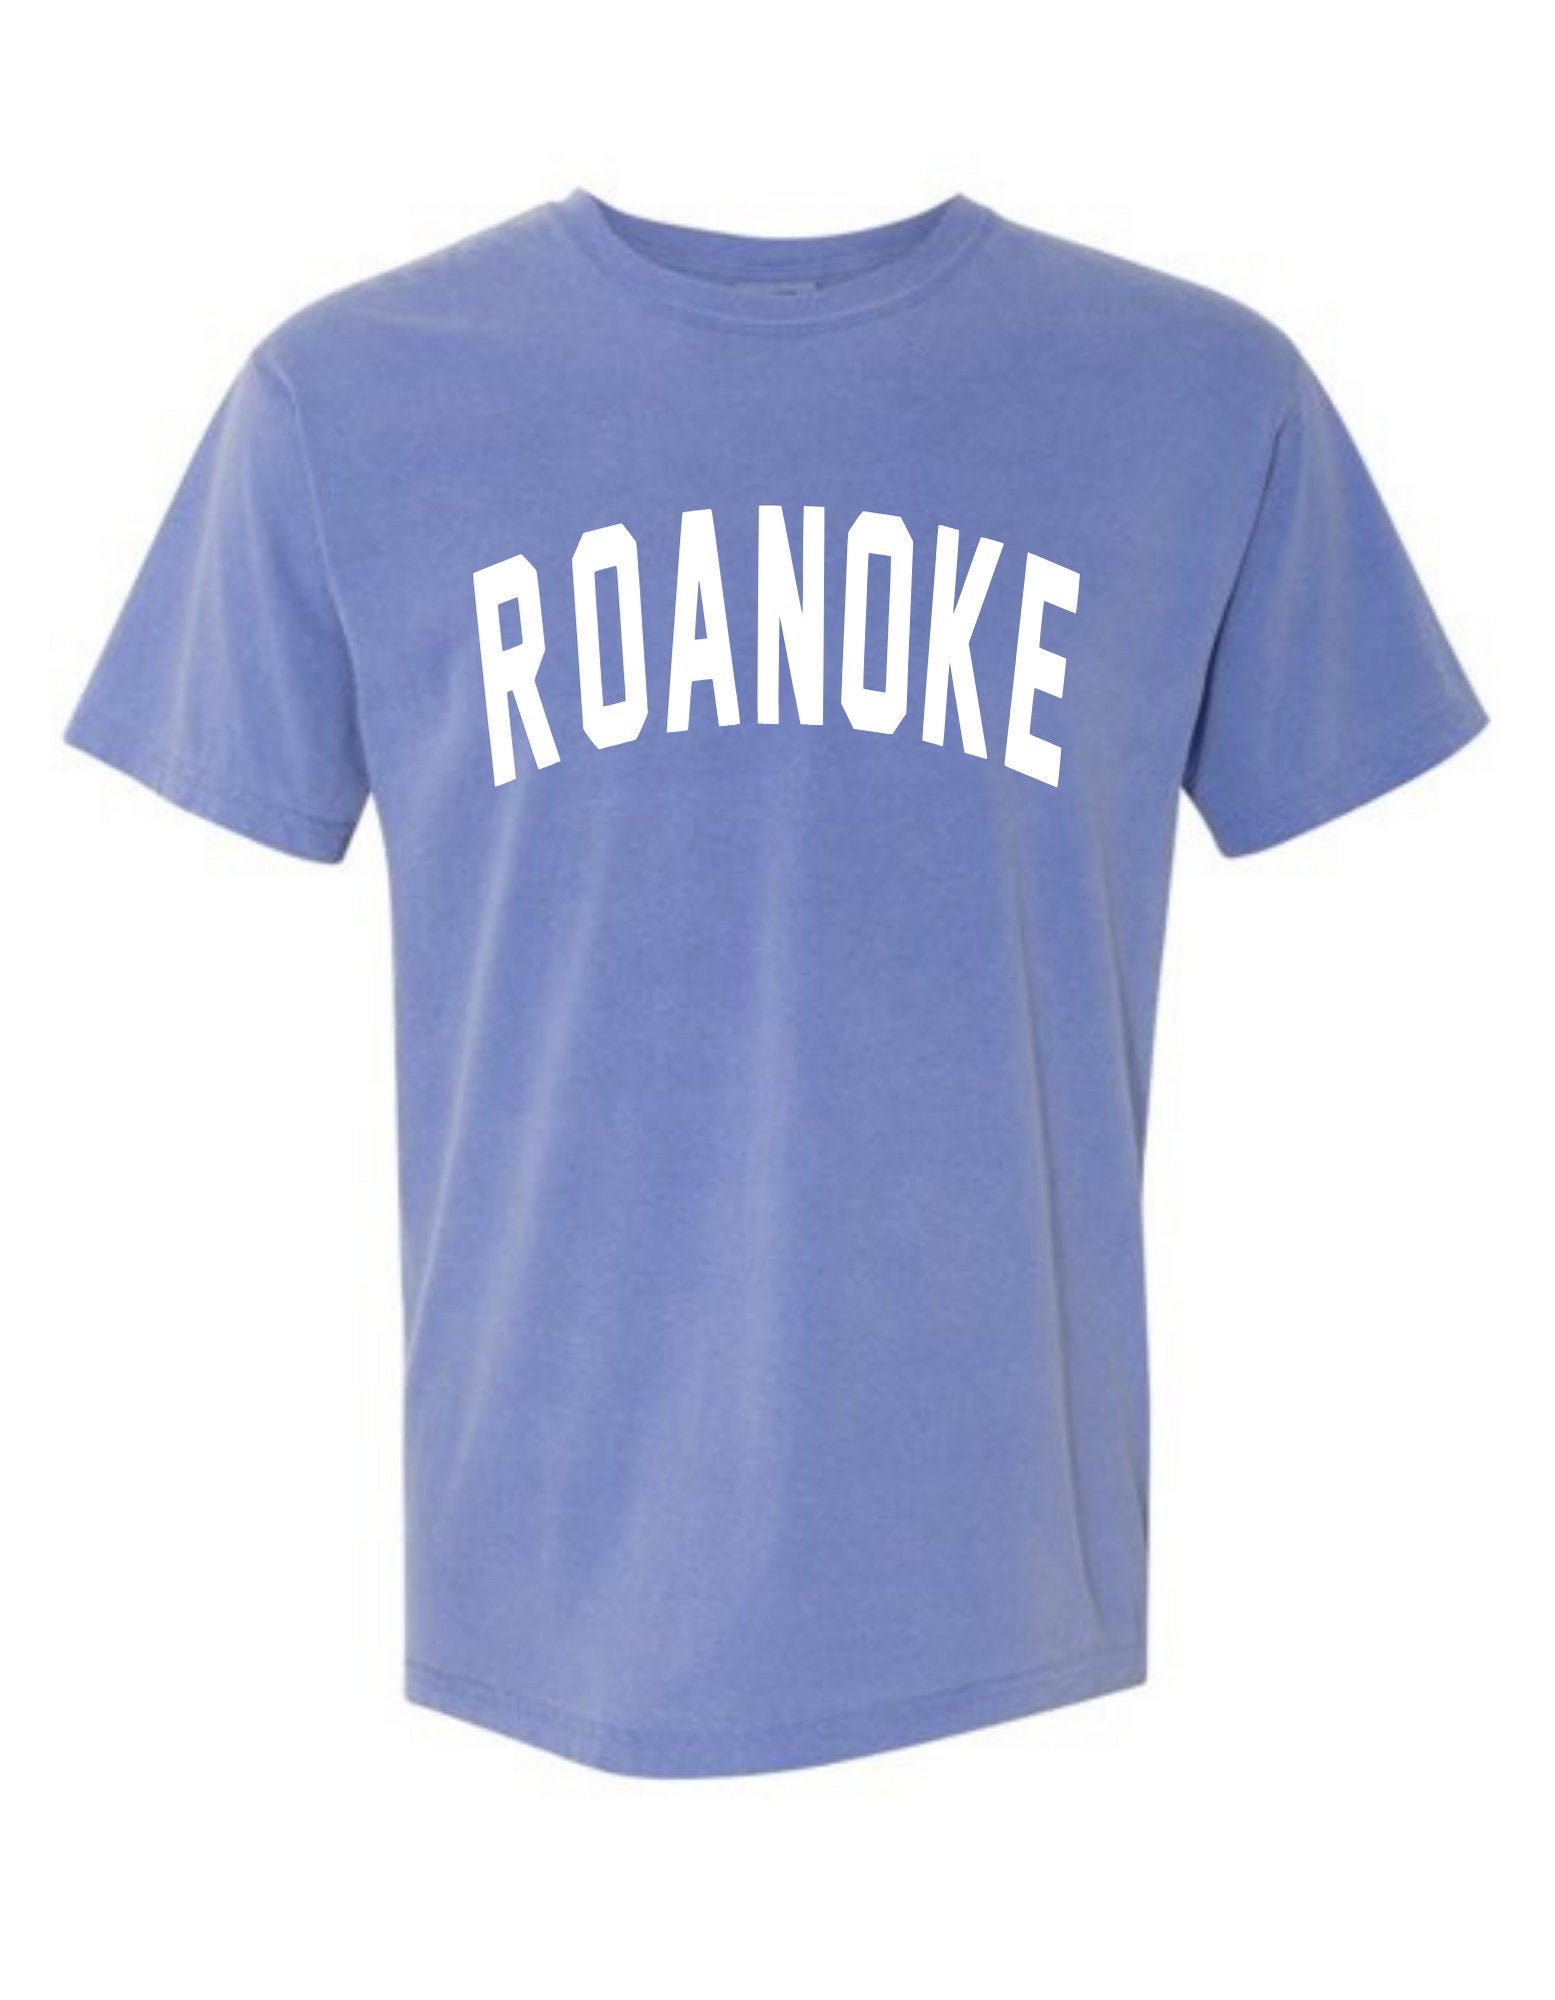 Roanoke T-Shirt Roanoke Shirt Roanoke Roanoke College | Etsy